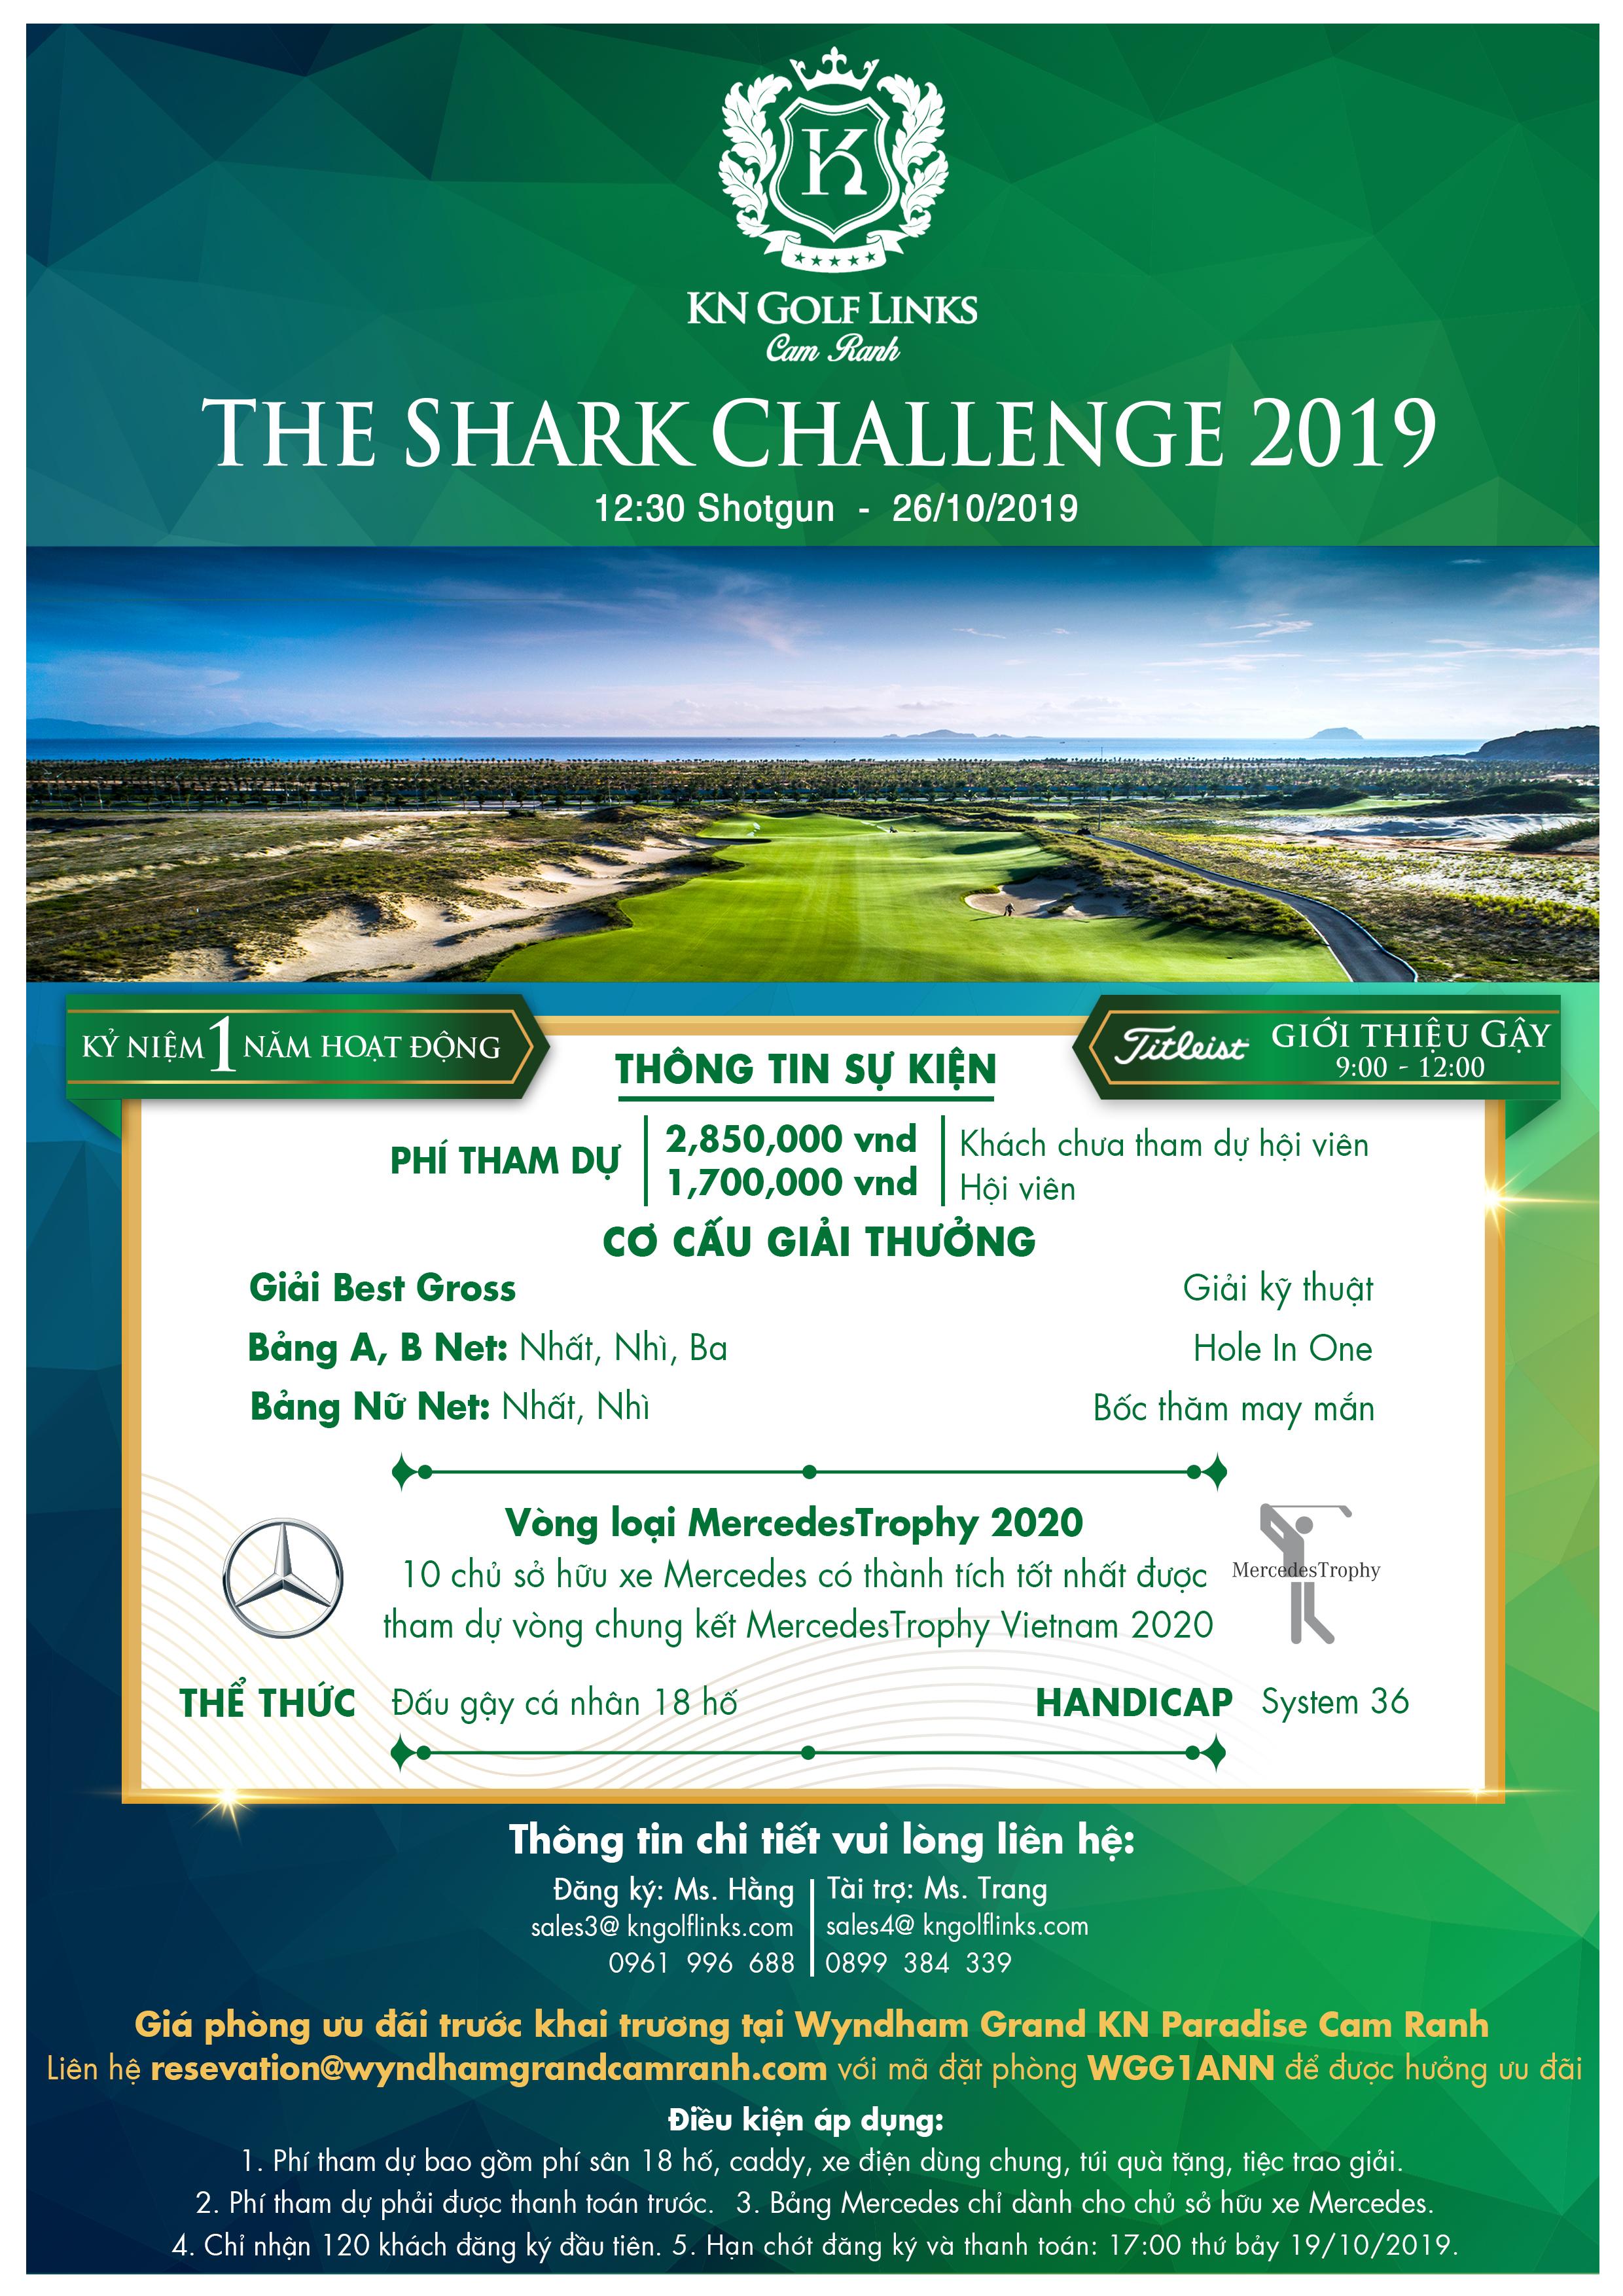 KN Golf Links tổ chức giải golf "The Shark Challenge 2019" kỷ niệm 1 năm hoạt động